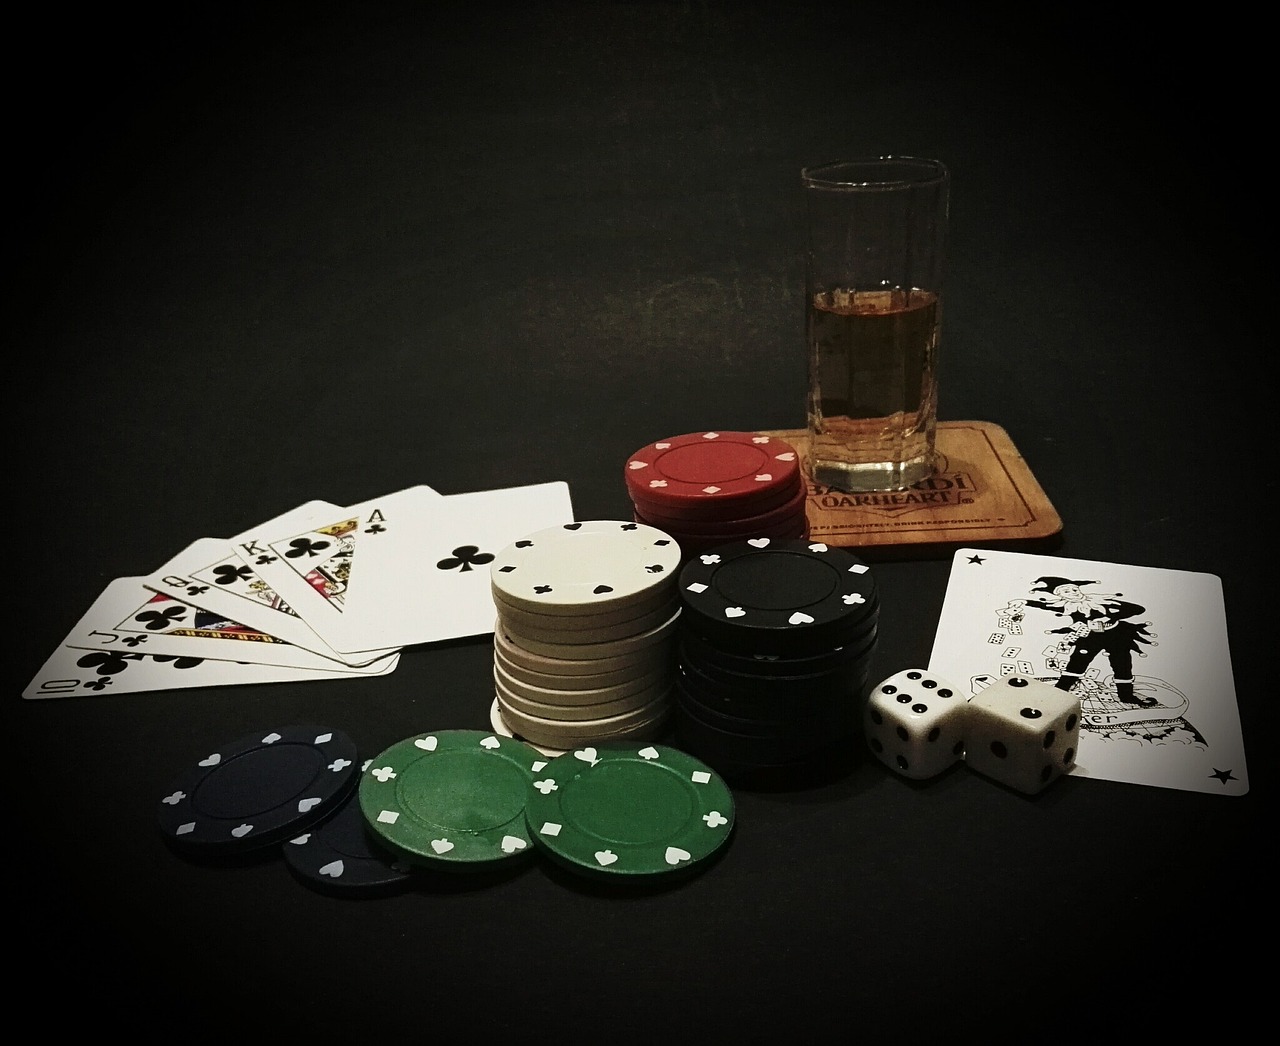 đồ họa tay poker  “Có hai lý do. Một là quy trình pháp